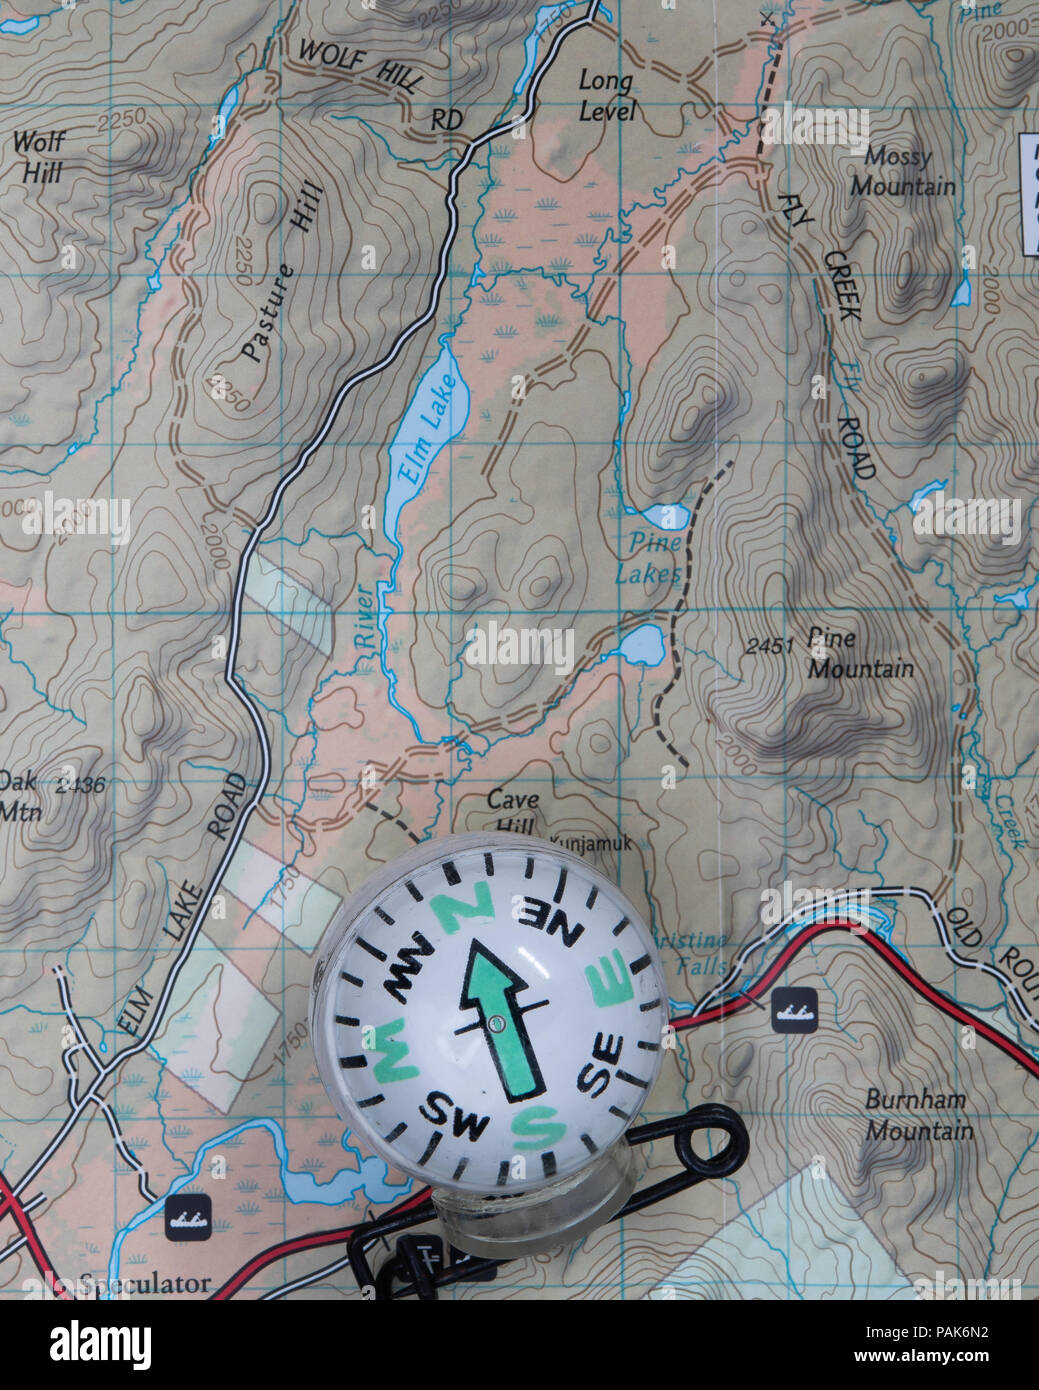 Eine topografische Karte von einem Teil der Adirondack Mountains mit einem Kompass in der Navigation zu unterstützen. Stockfoto